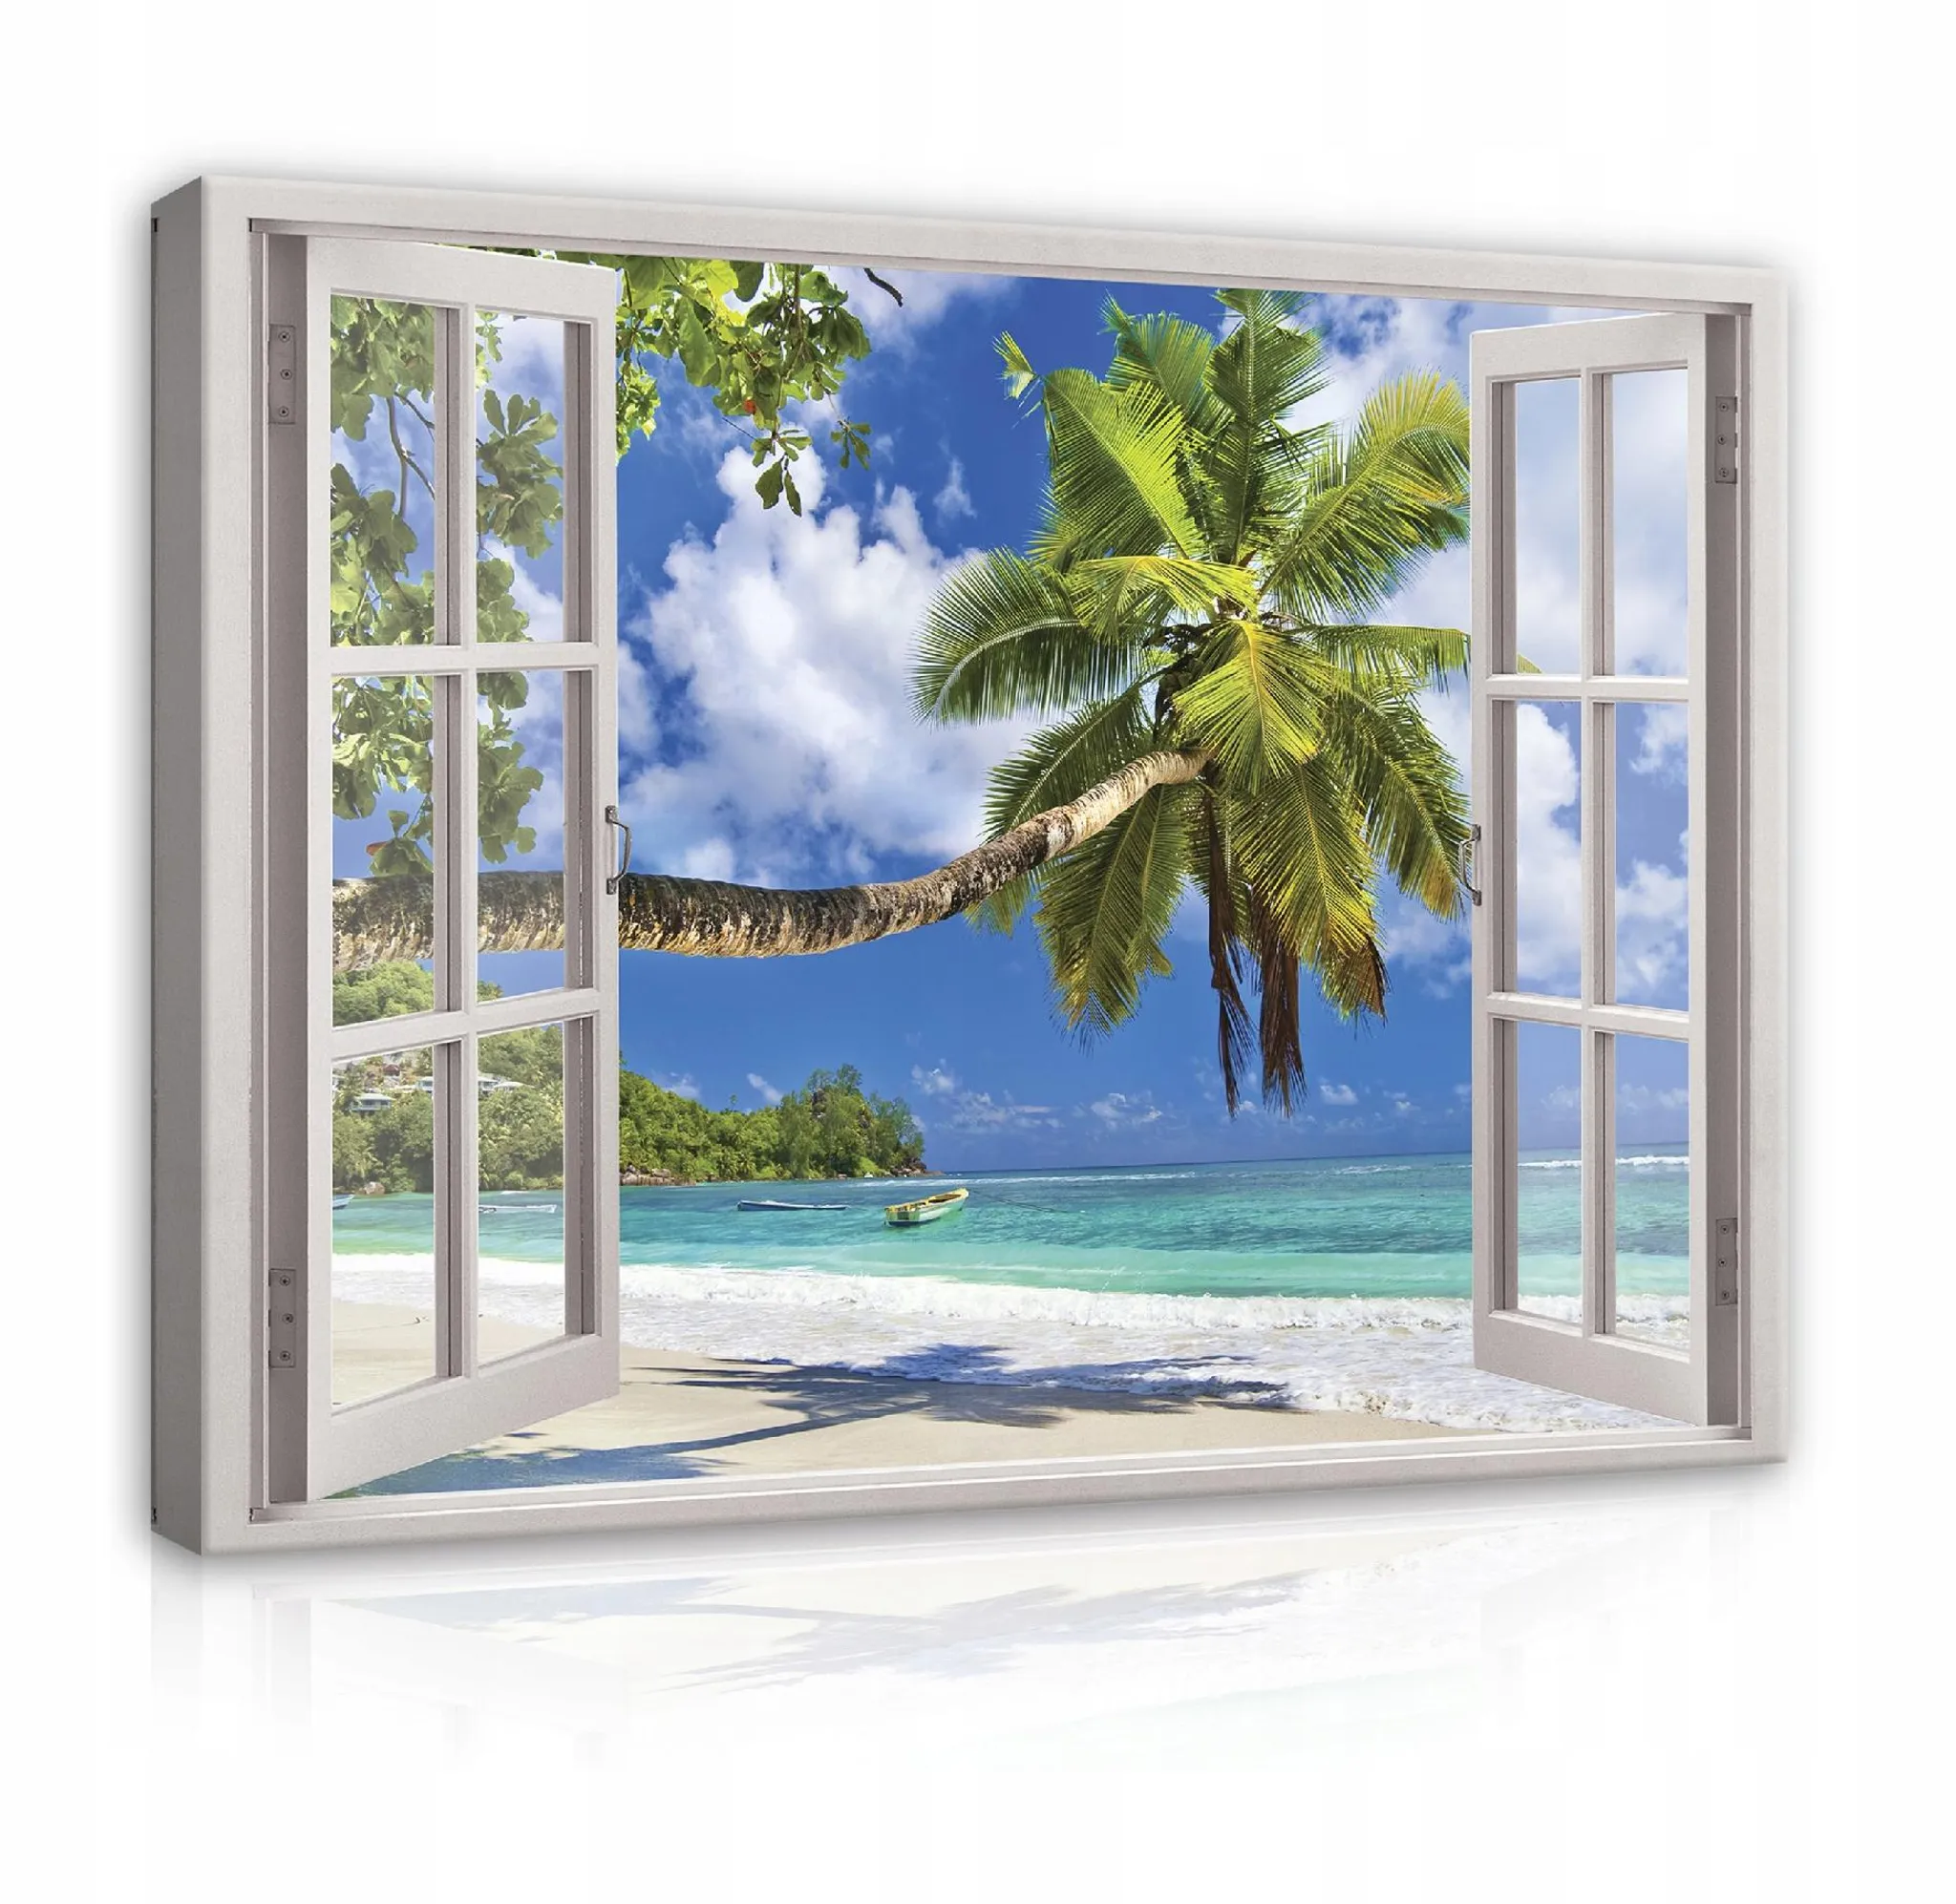 Leinwand-Bild Kunstdruck Hochformat 50x100 Bilder Landschaft Fenster 